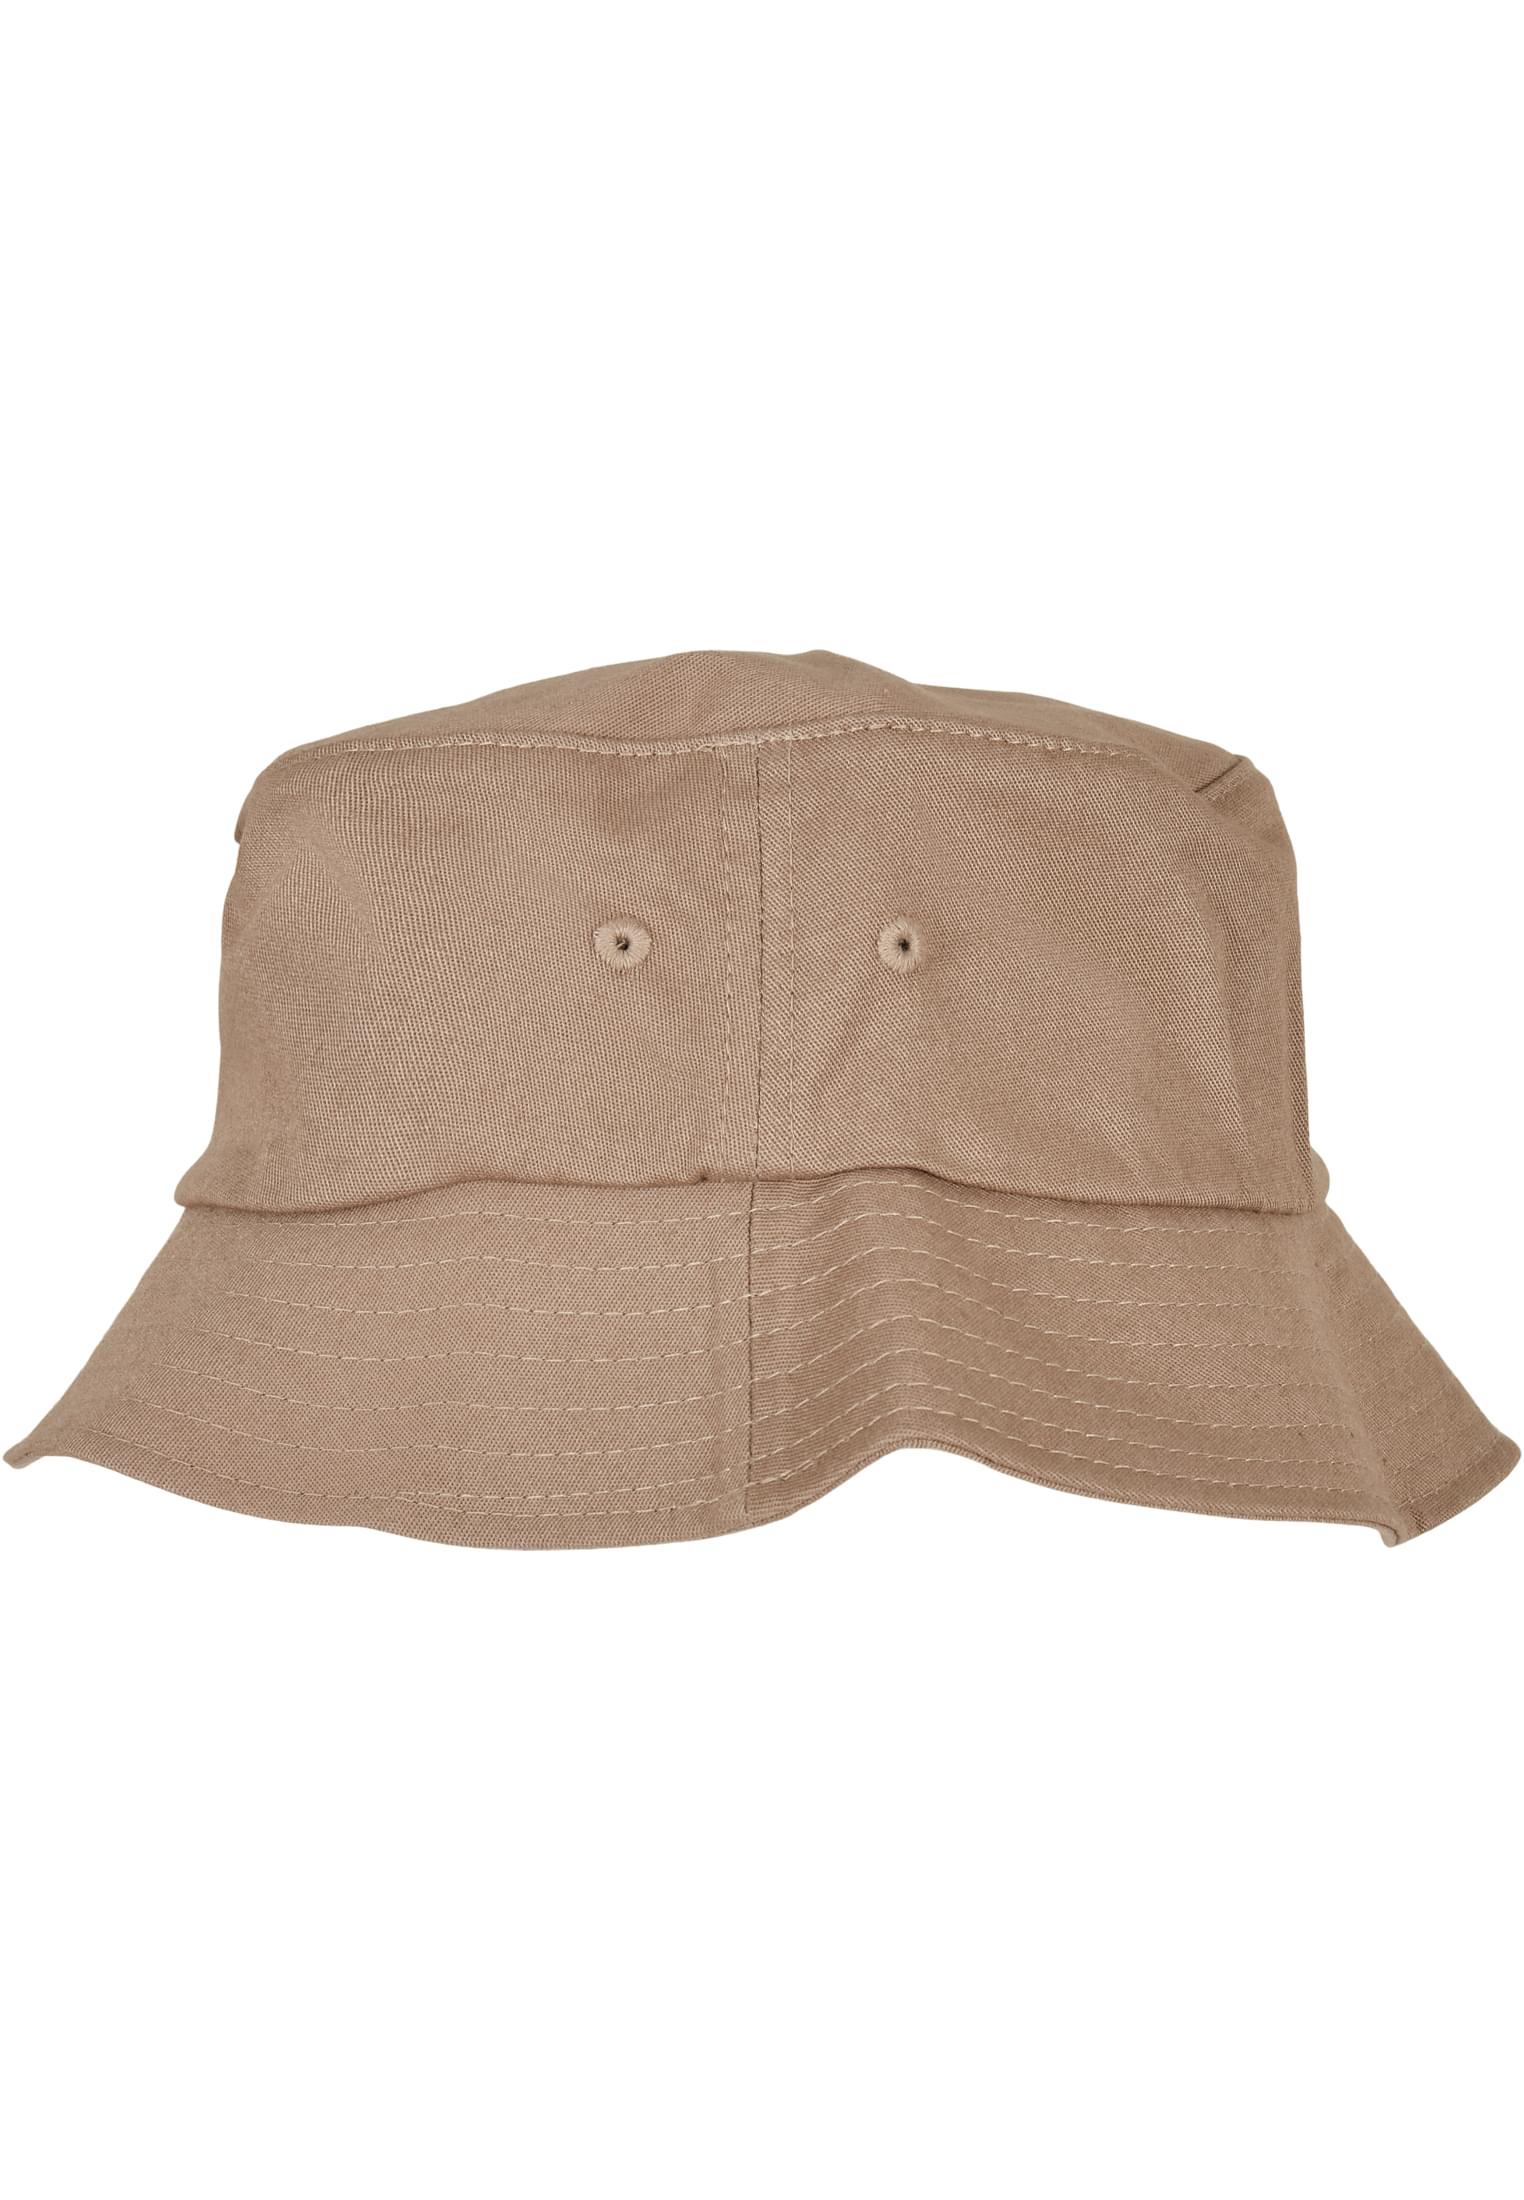 Cotton Flexfit Hat Kids-5003KH Bucket Twill